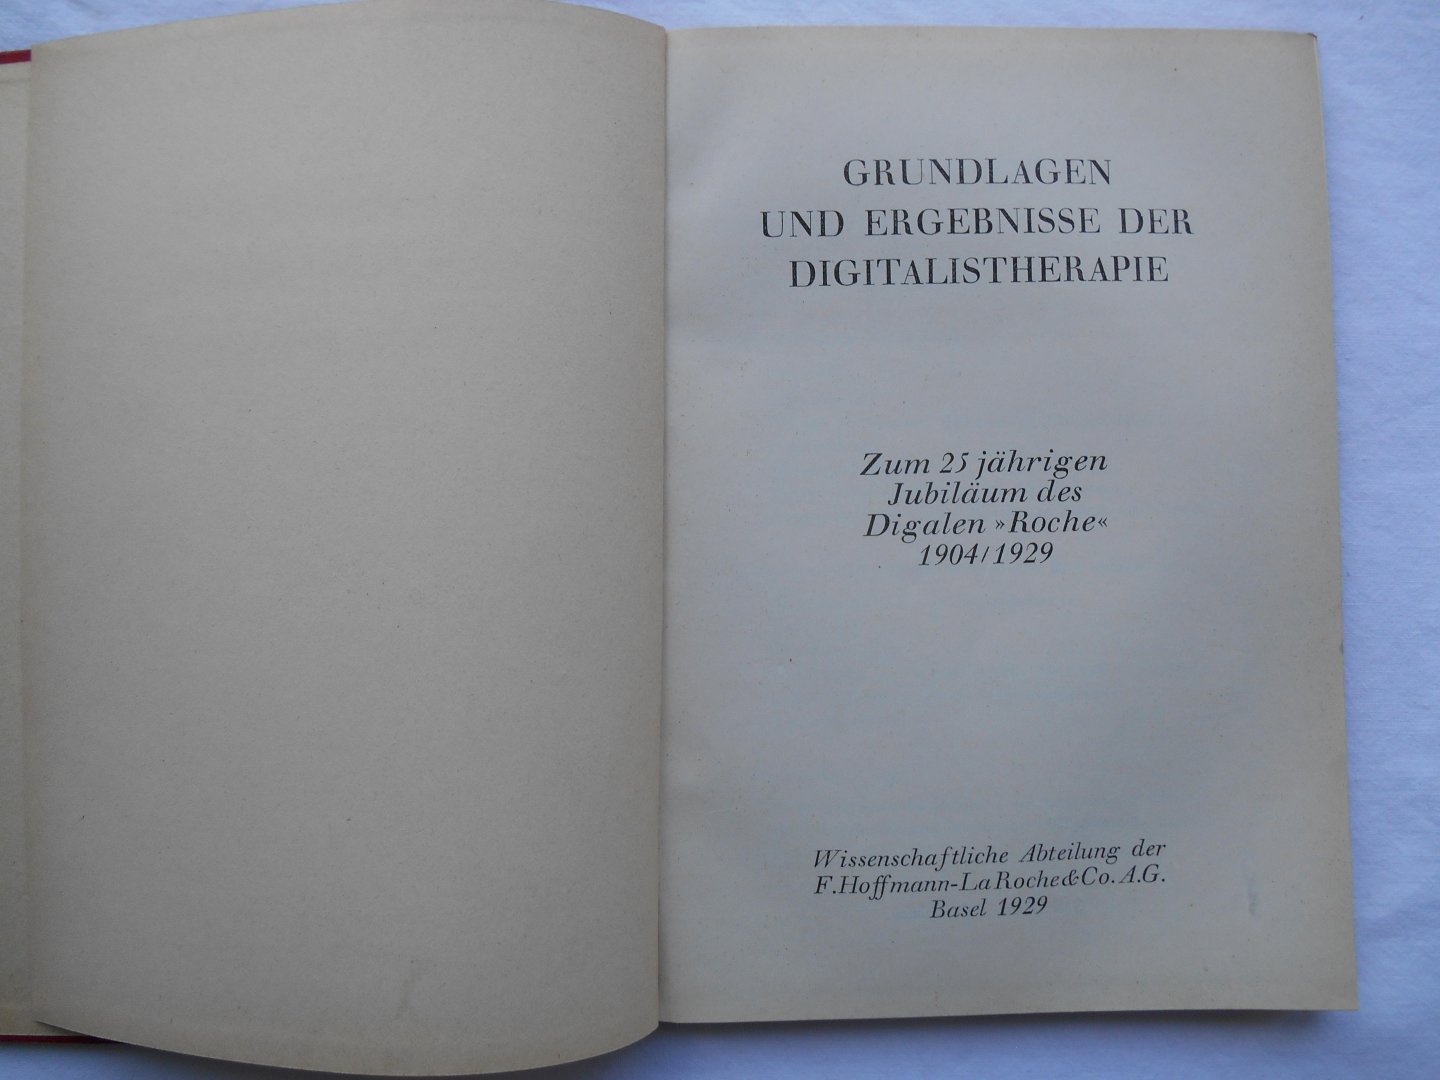 Hoffman-La Roche, 1929 - Grundlagen und Ergebnisse der Digitalistherapie